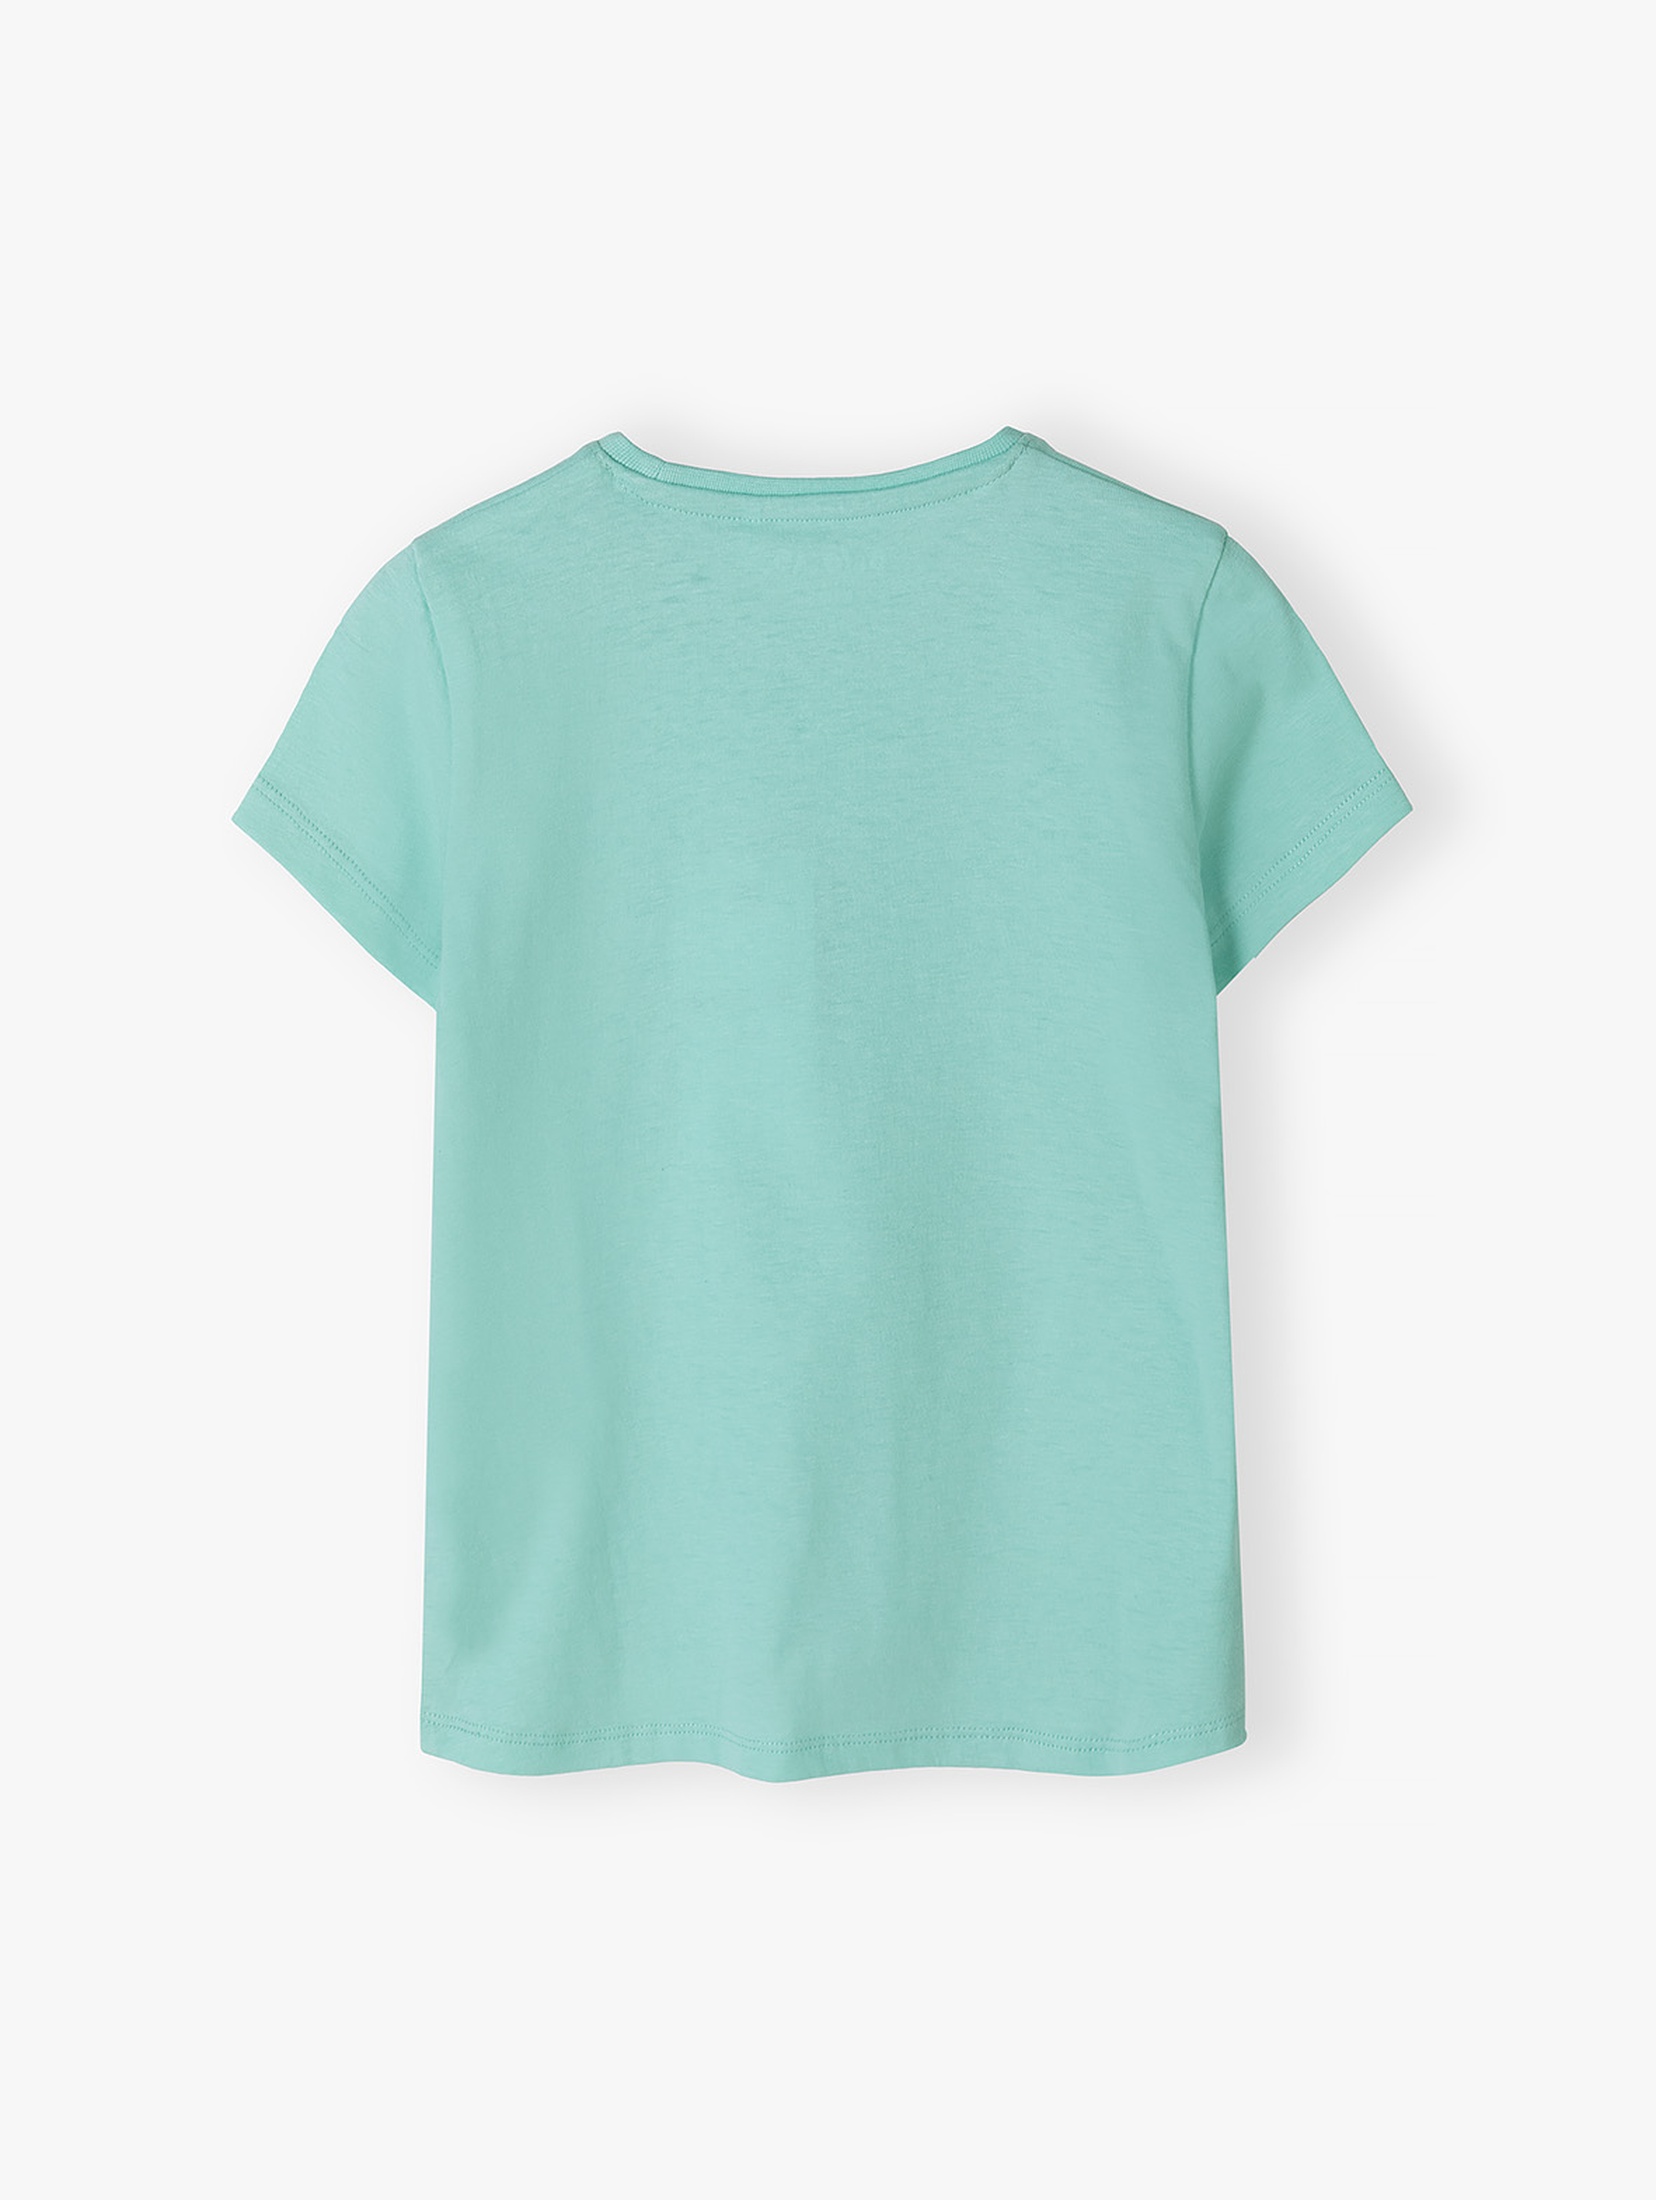 Zielony t-shirt bawełniany dla dziewczynki z serduszkiem